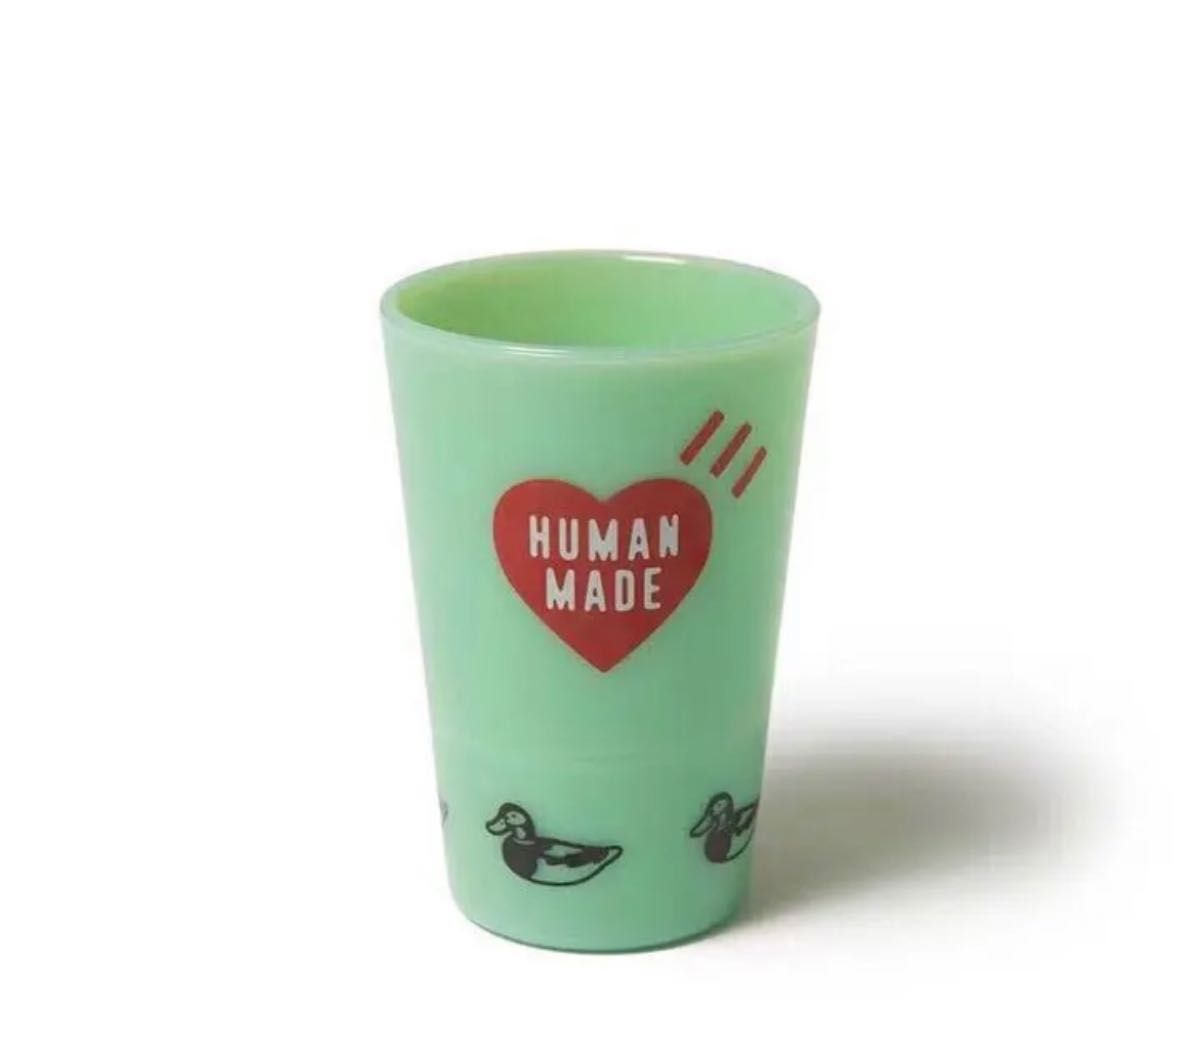 humanmade cup